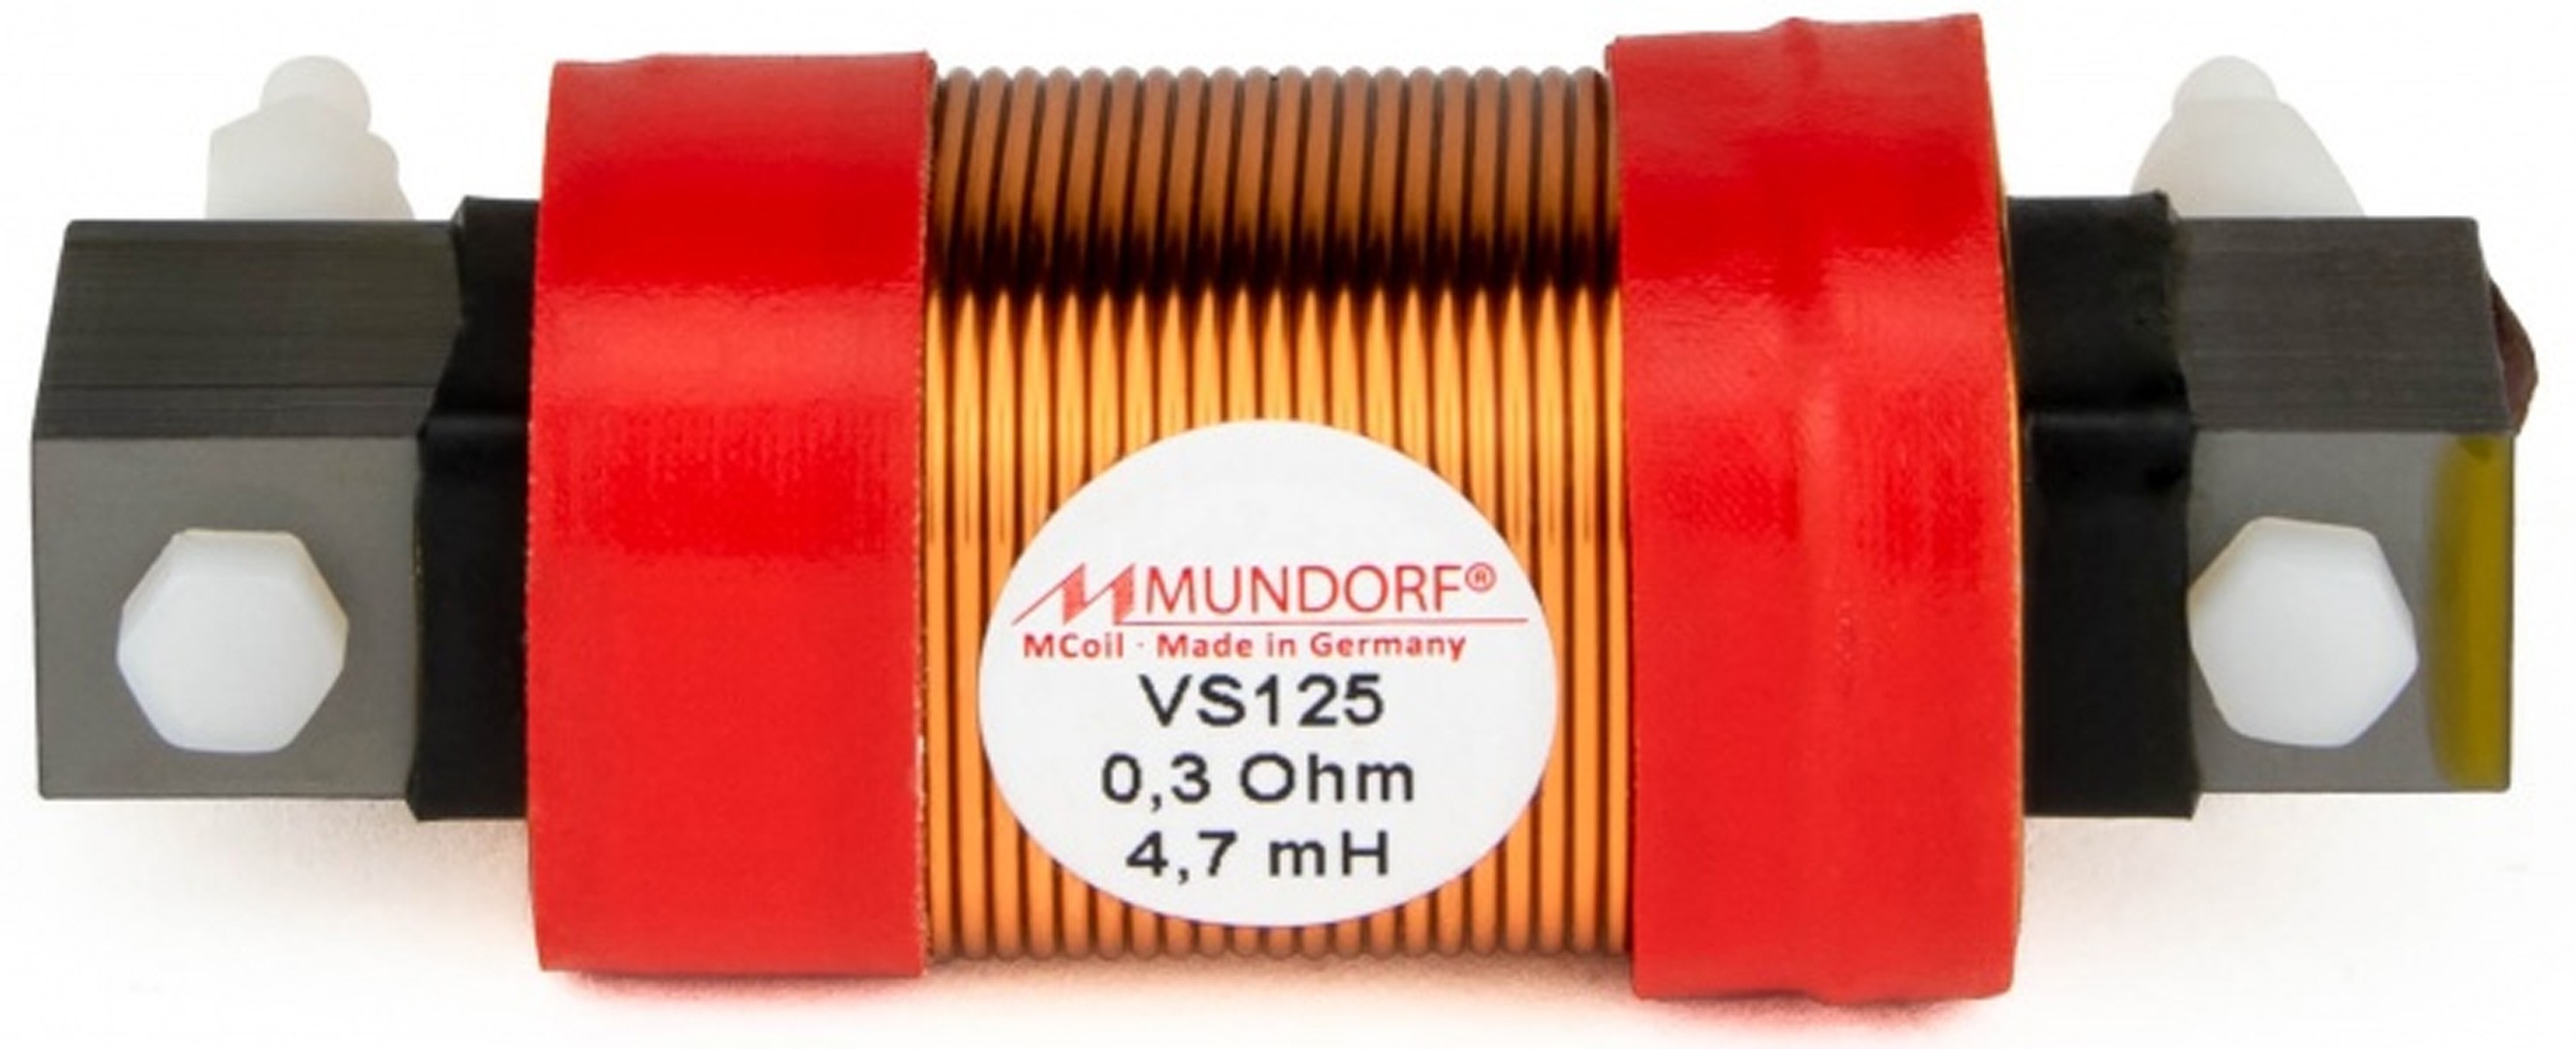 MUNDORF VS125-12 MCOIL ICORE Copper Coil Feron Core 12mH